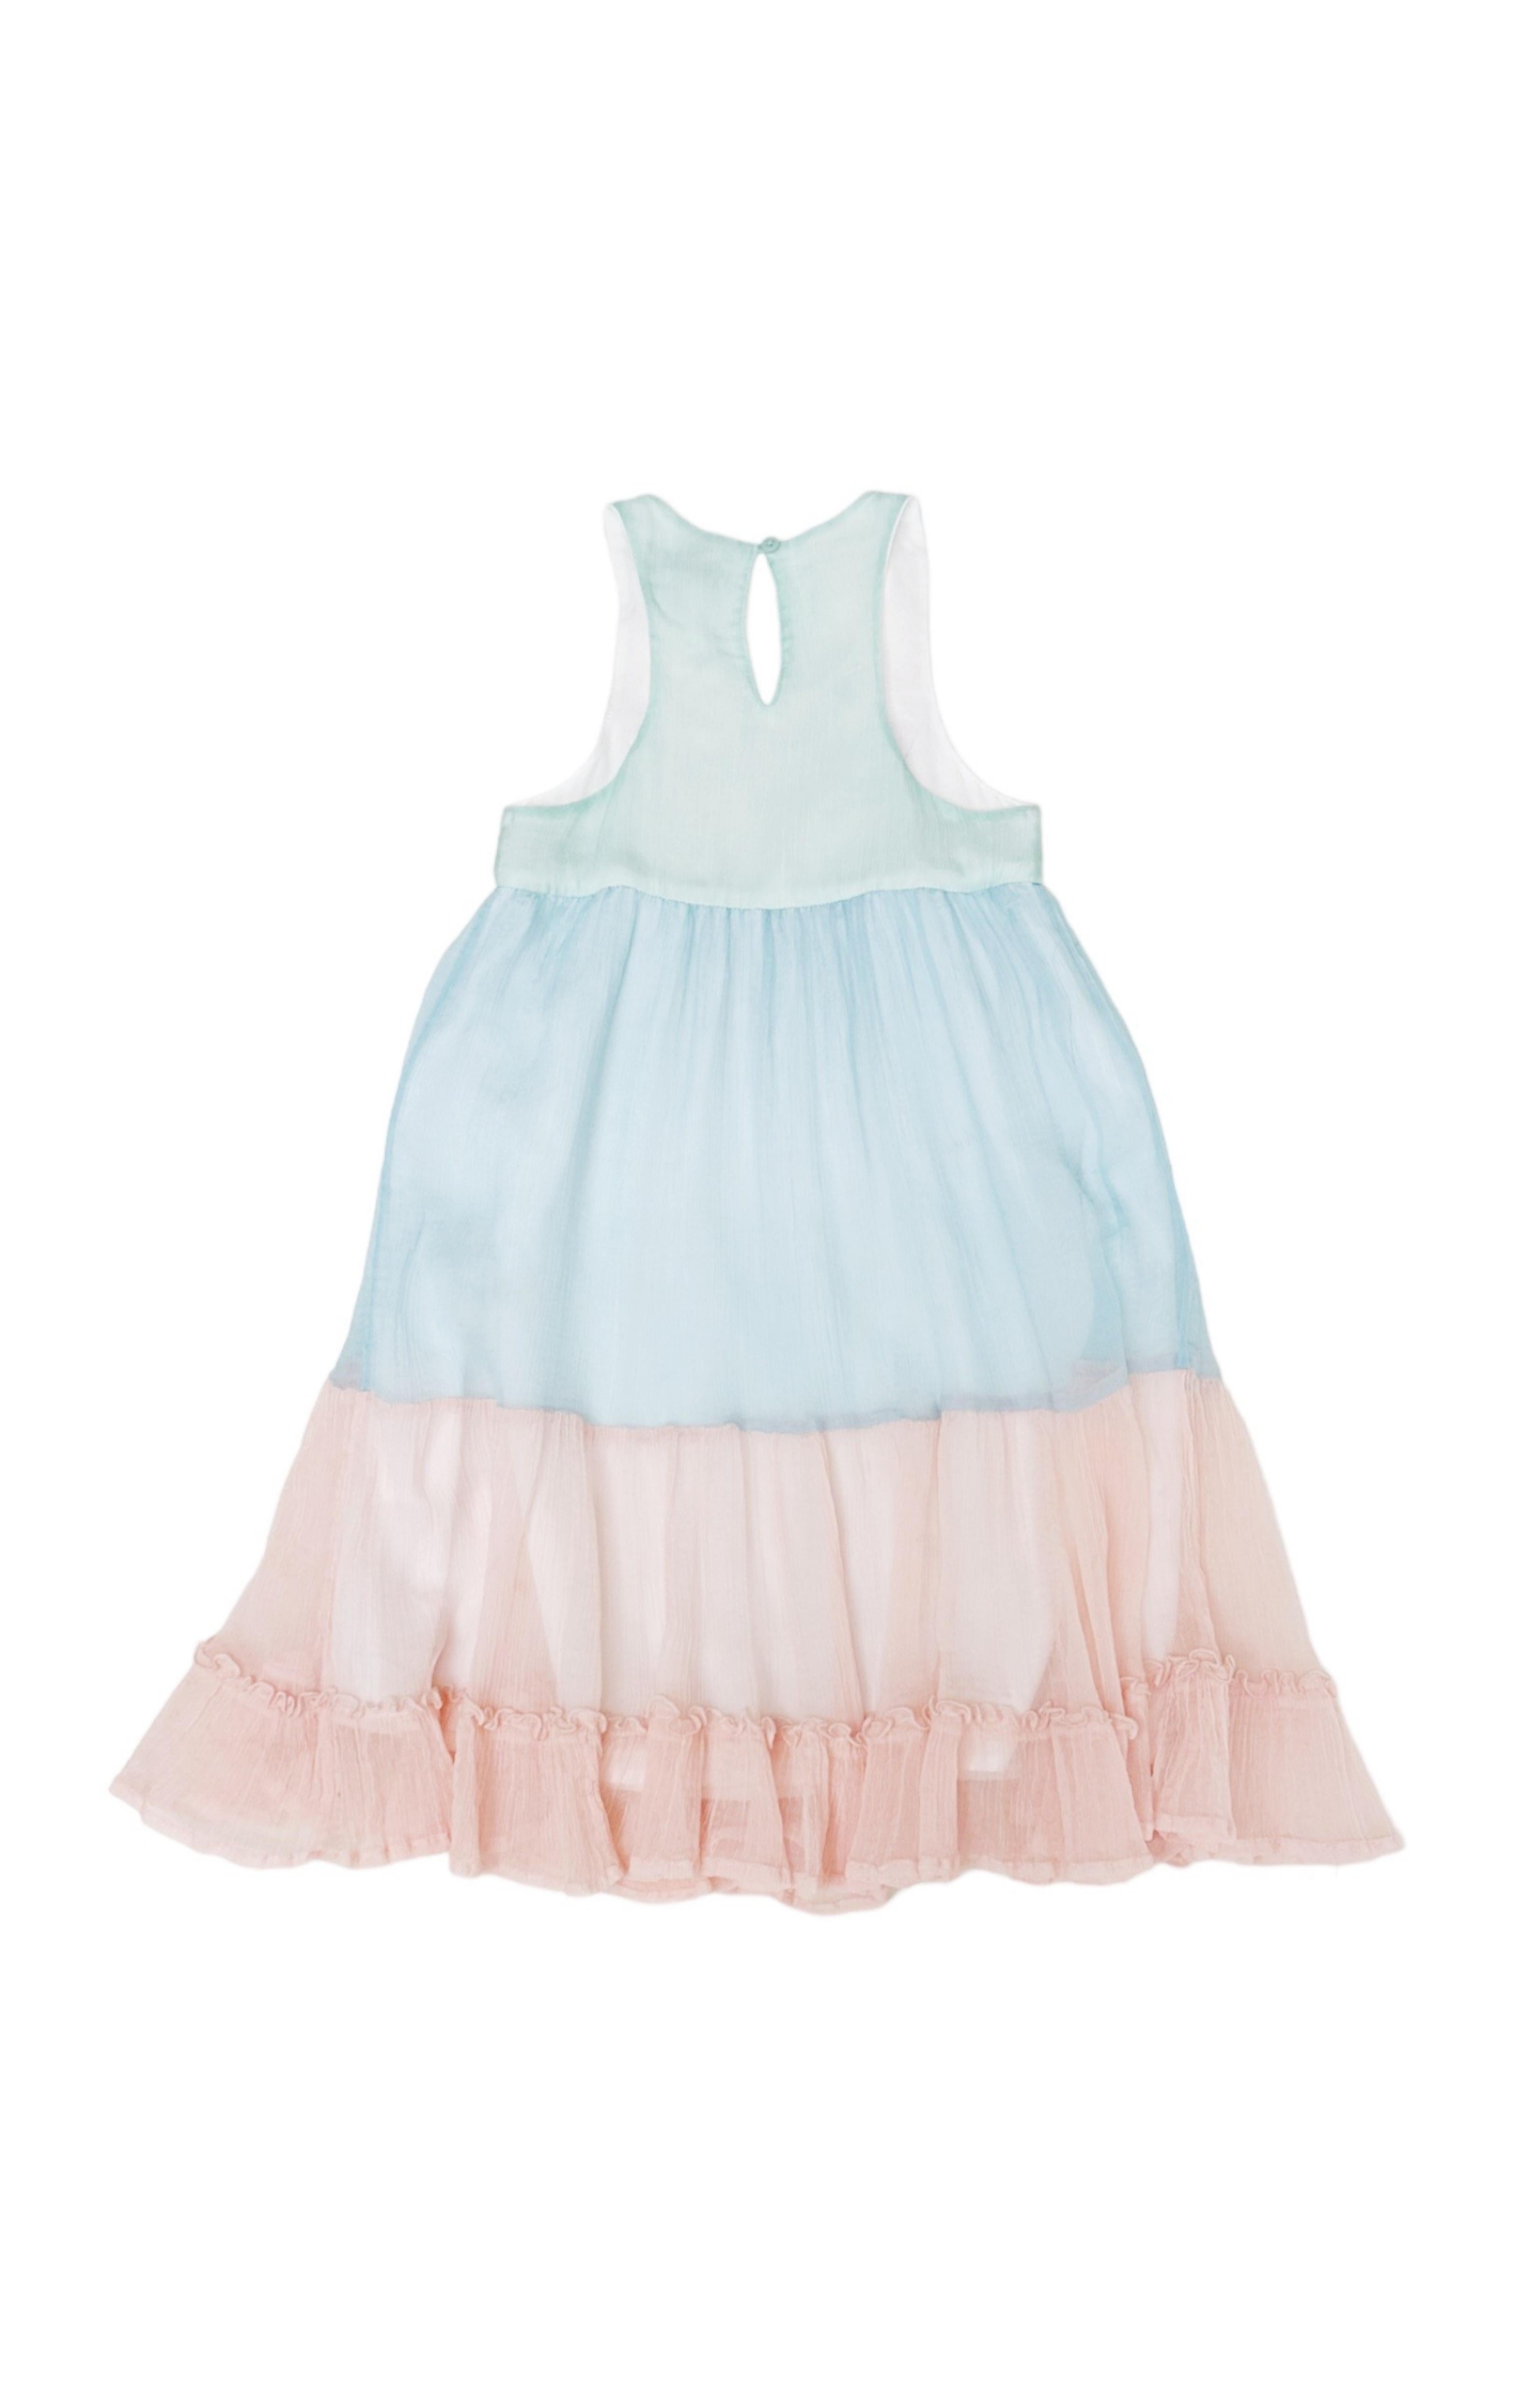 STELLA MCCARTNEY KIDS Dress Size: 4 Years